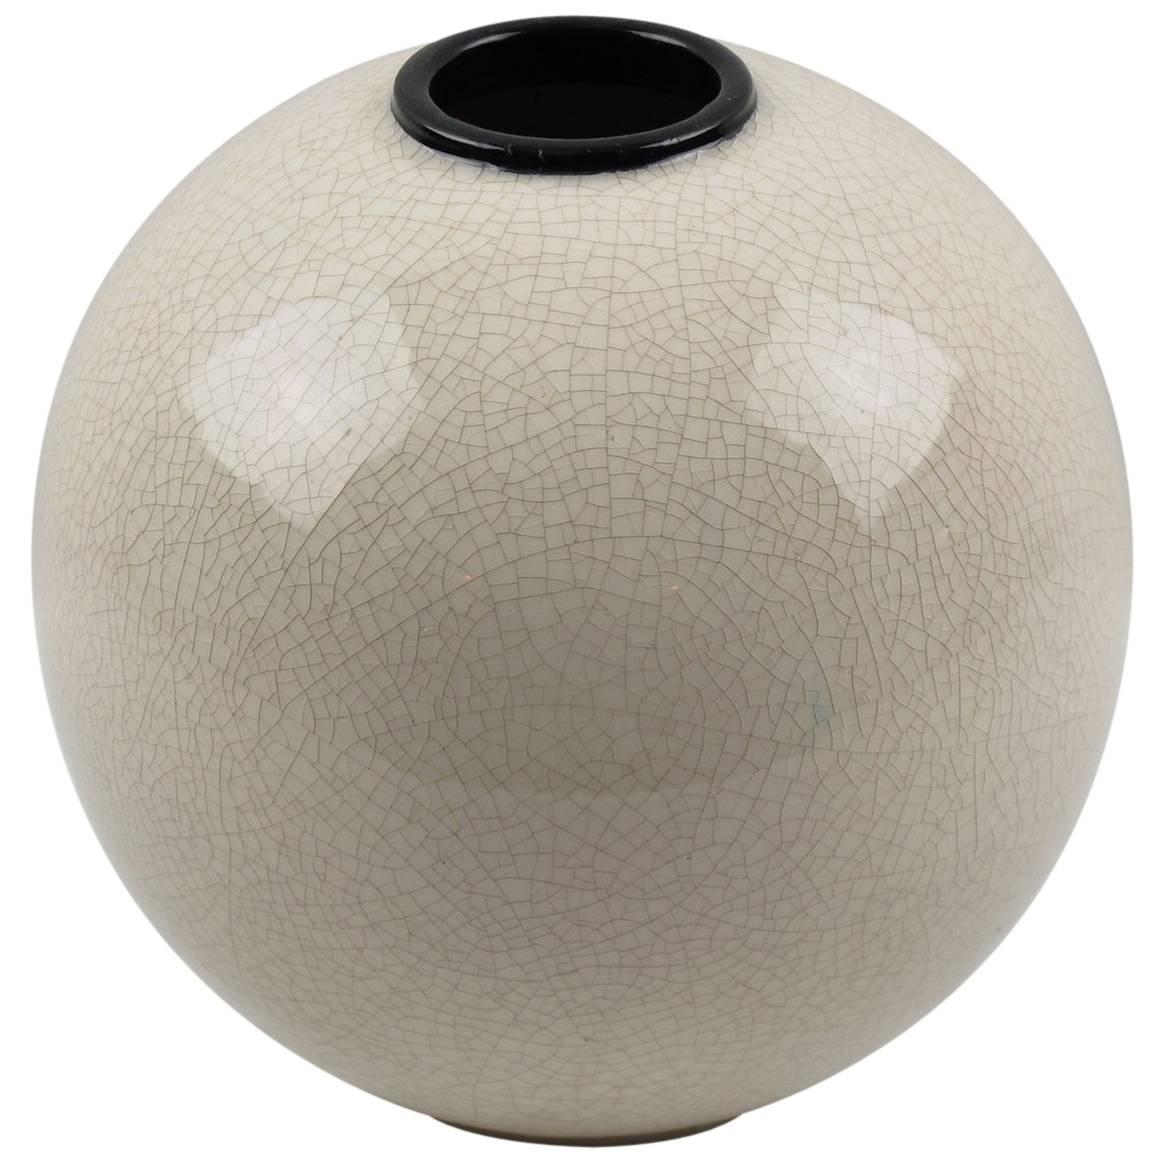 Saint-Clement France Signed Art Deco Modernist Crackle Glaze Ceramic Vase